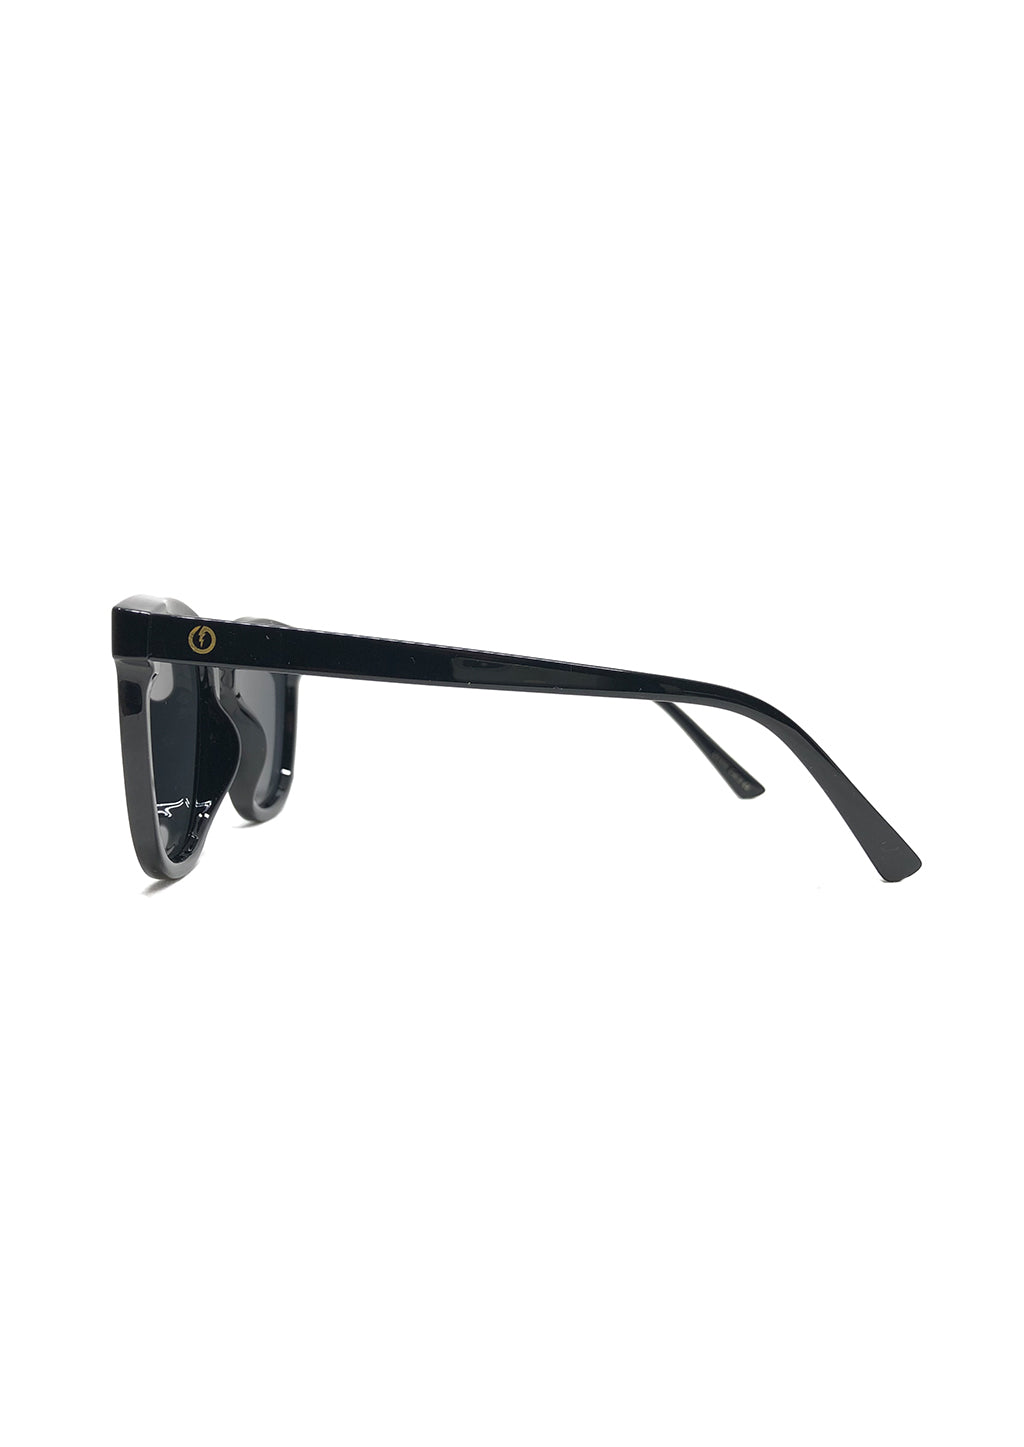 Dahlia Wayfarer sunglasses - Details